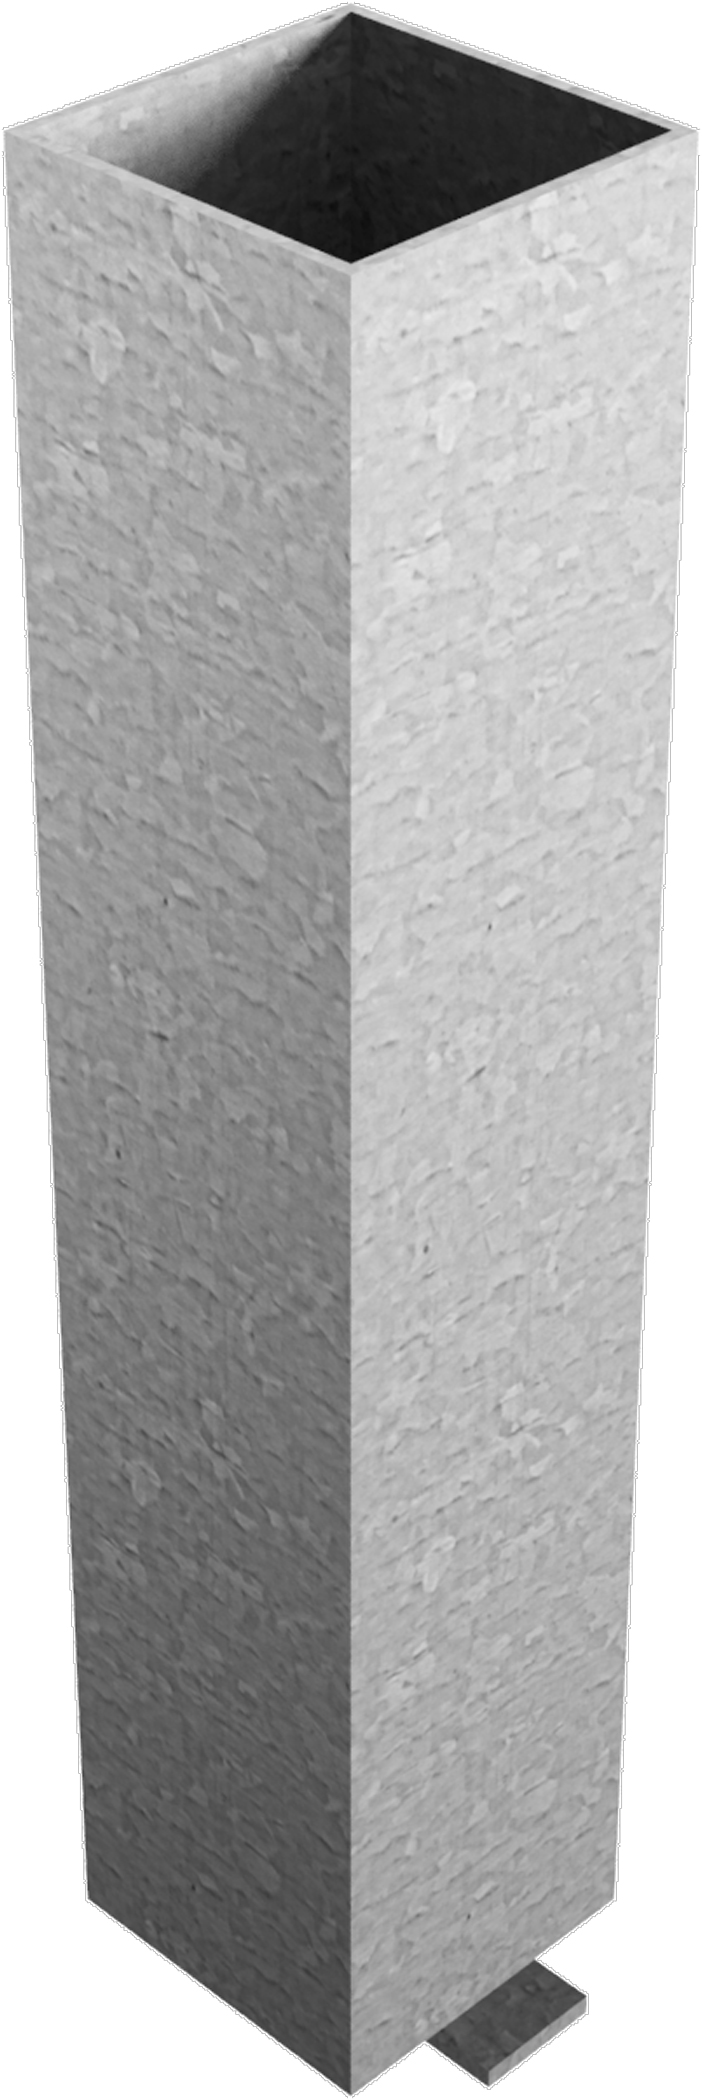 Schake Bodenhülse ohne Verschluss für Absperrpfosten 70 x 70 mm 